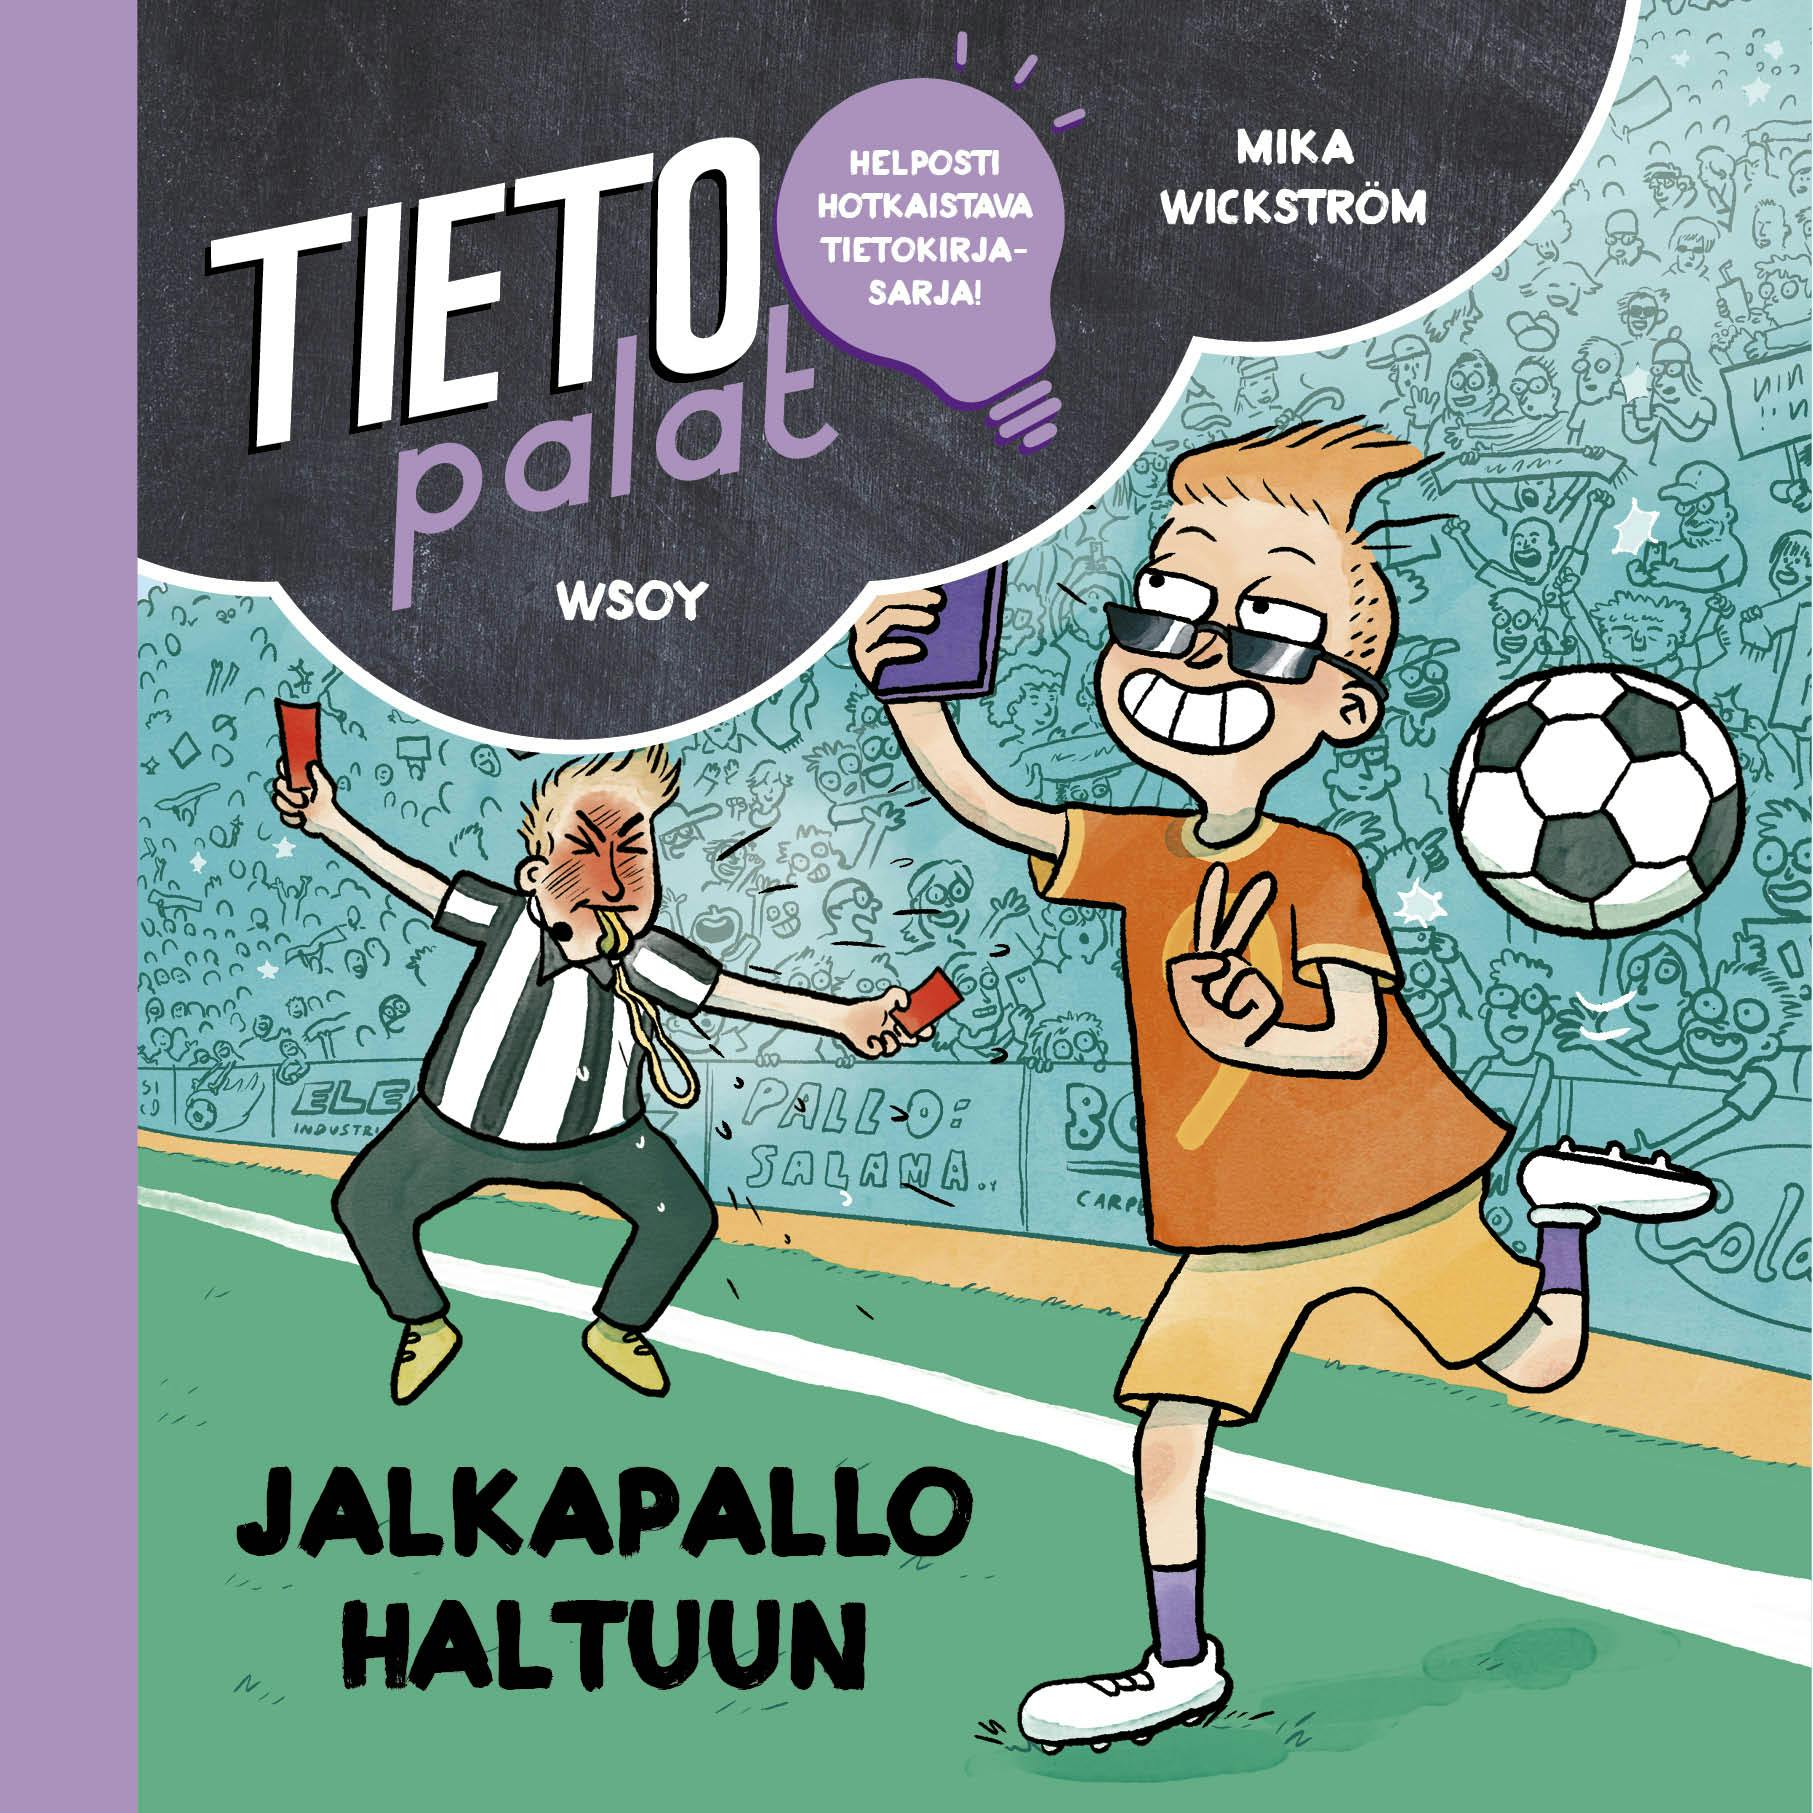 Tietopalat: Jalkapallo haltuun - Mika Wickström